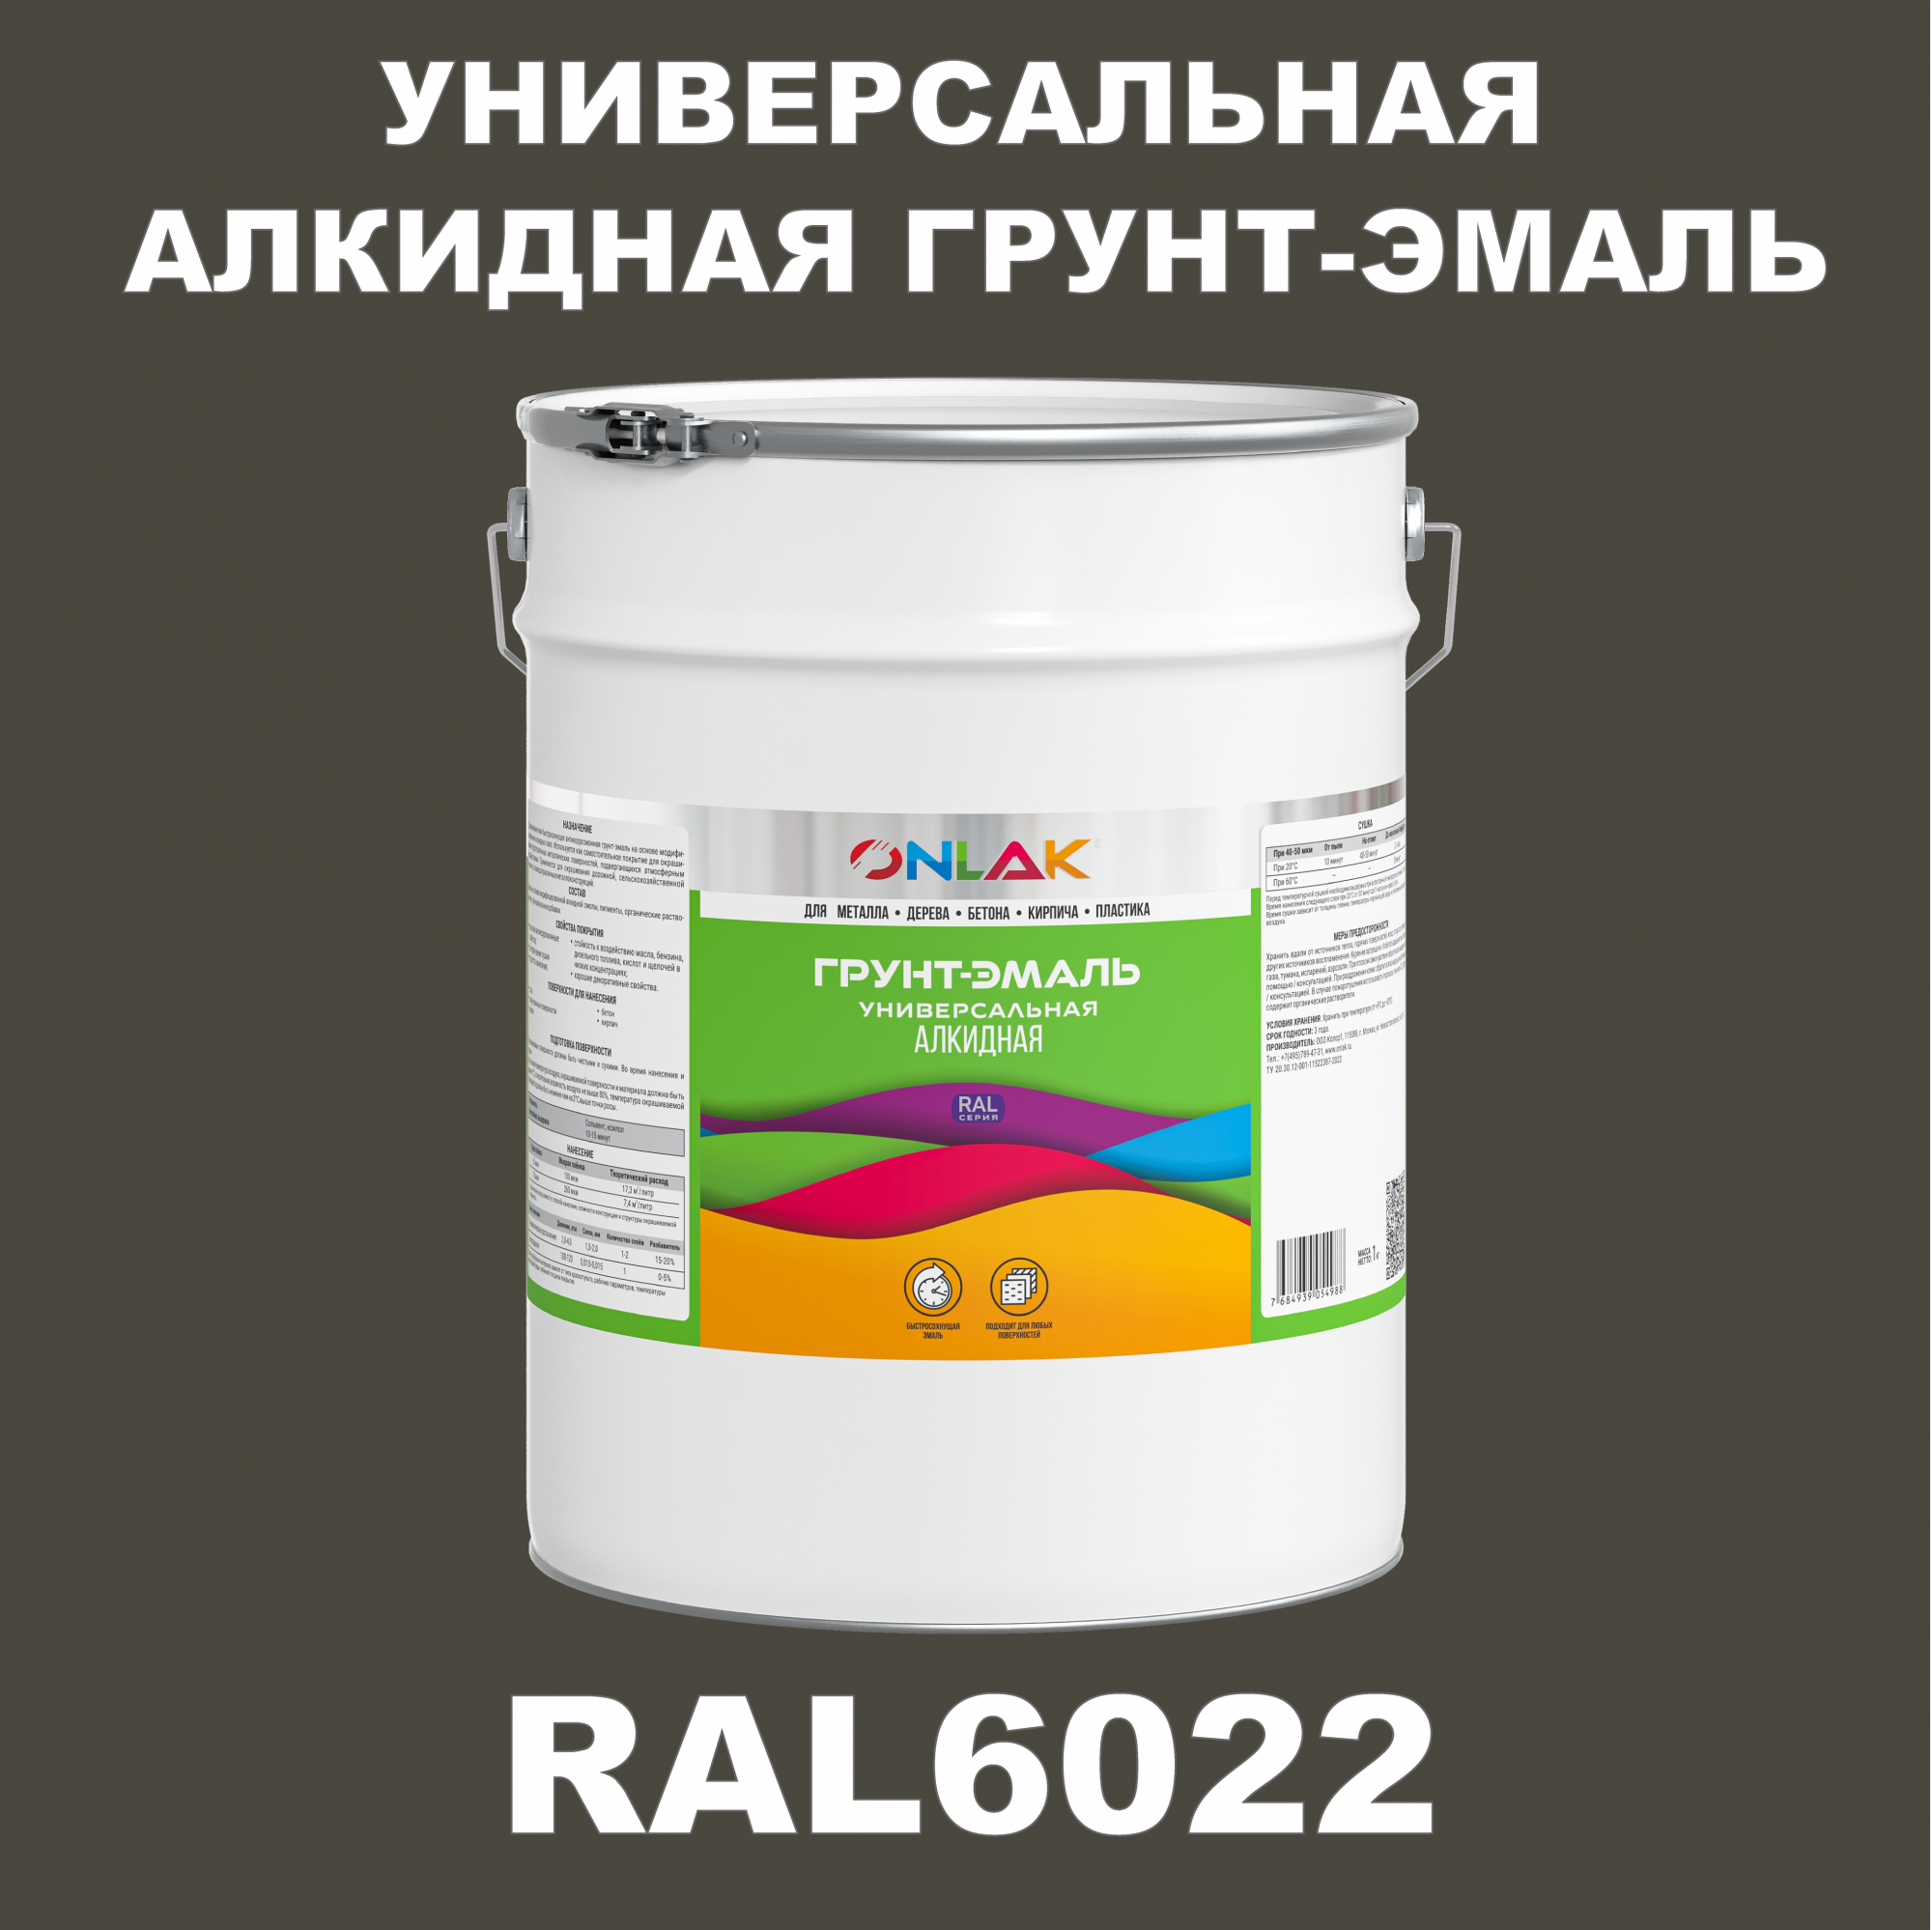 Грунт-эмаль ONLAK 1К RAL6022 антикоррозионная алкидная по металлу по ржавчине 20 кг грунт эмаль yollo по ржавчине алкидная серая 0 9 кг